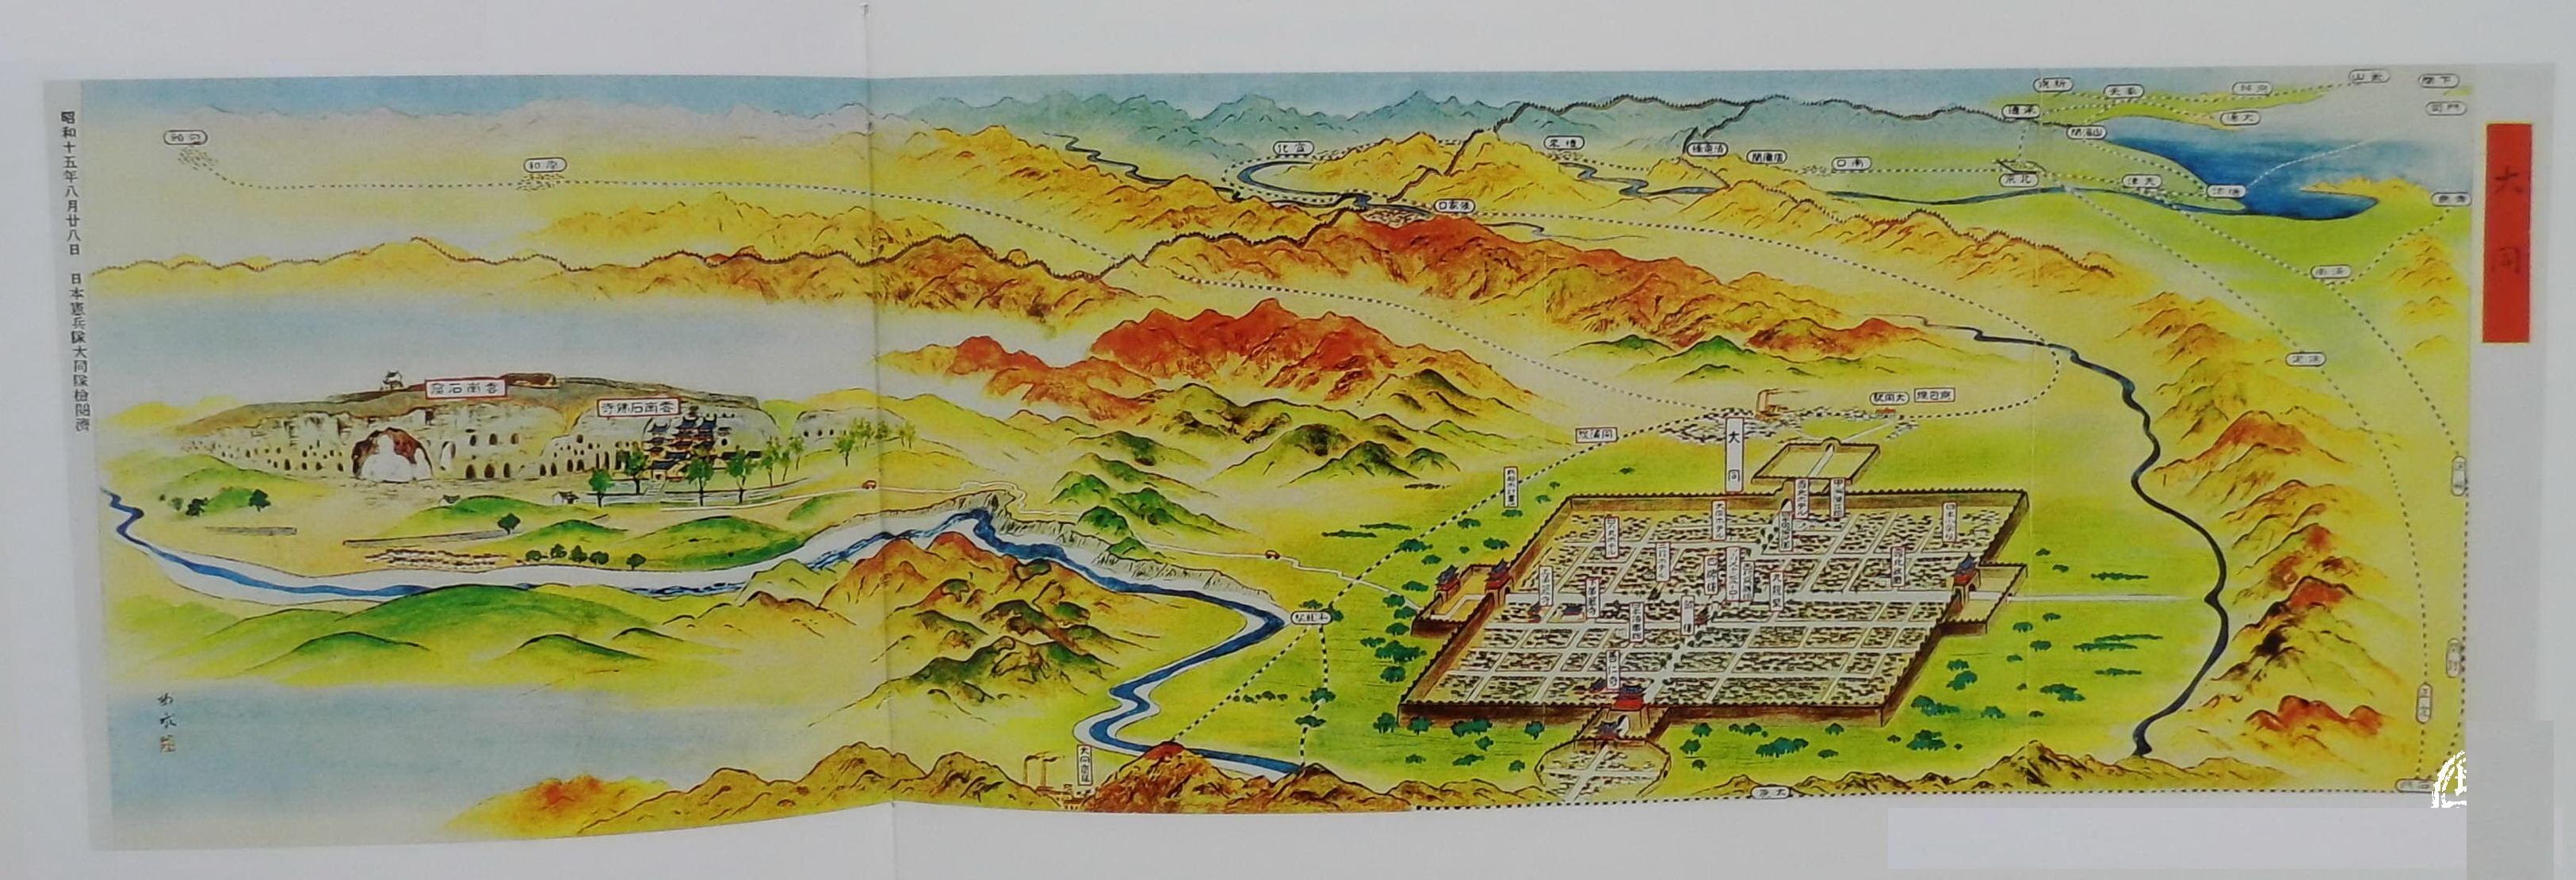 抗日战争前,日本派间谍绘制中国多个大城市地图